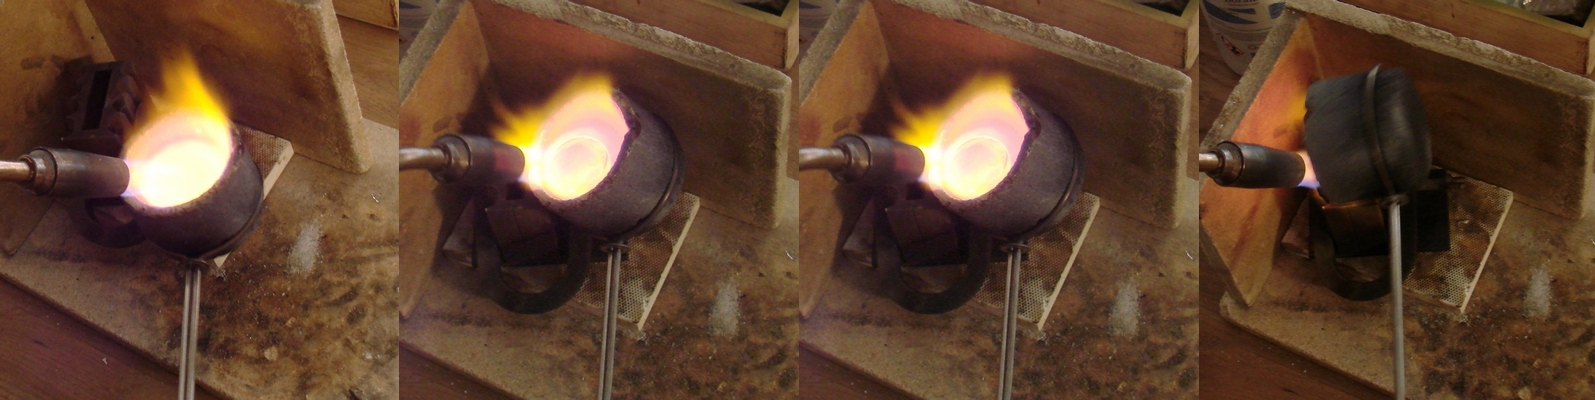 Złotnictwo artystyczne - topienie srebra w tyglu - tradycyjna pracownia złotnicza